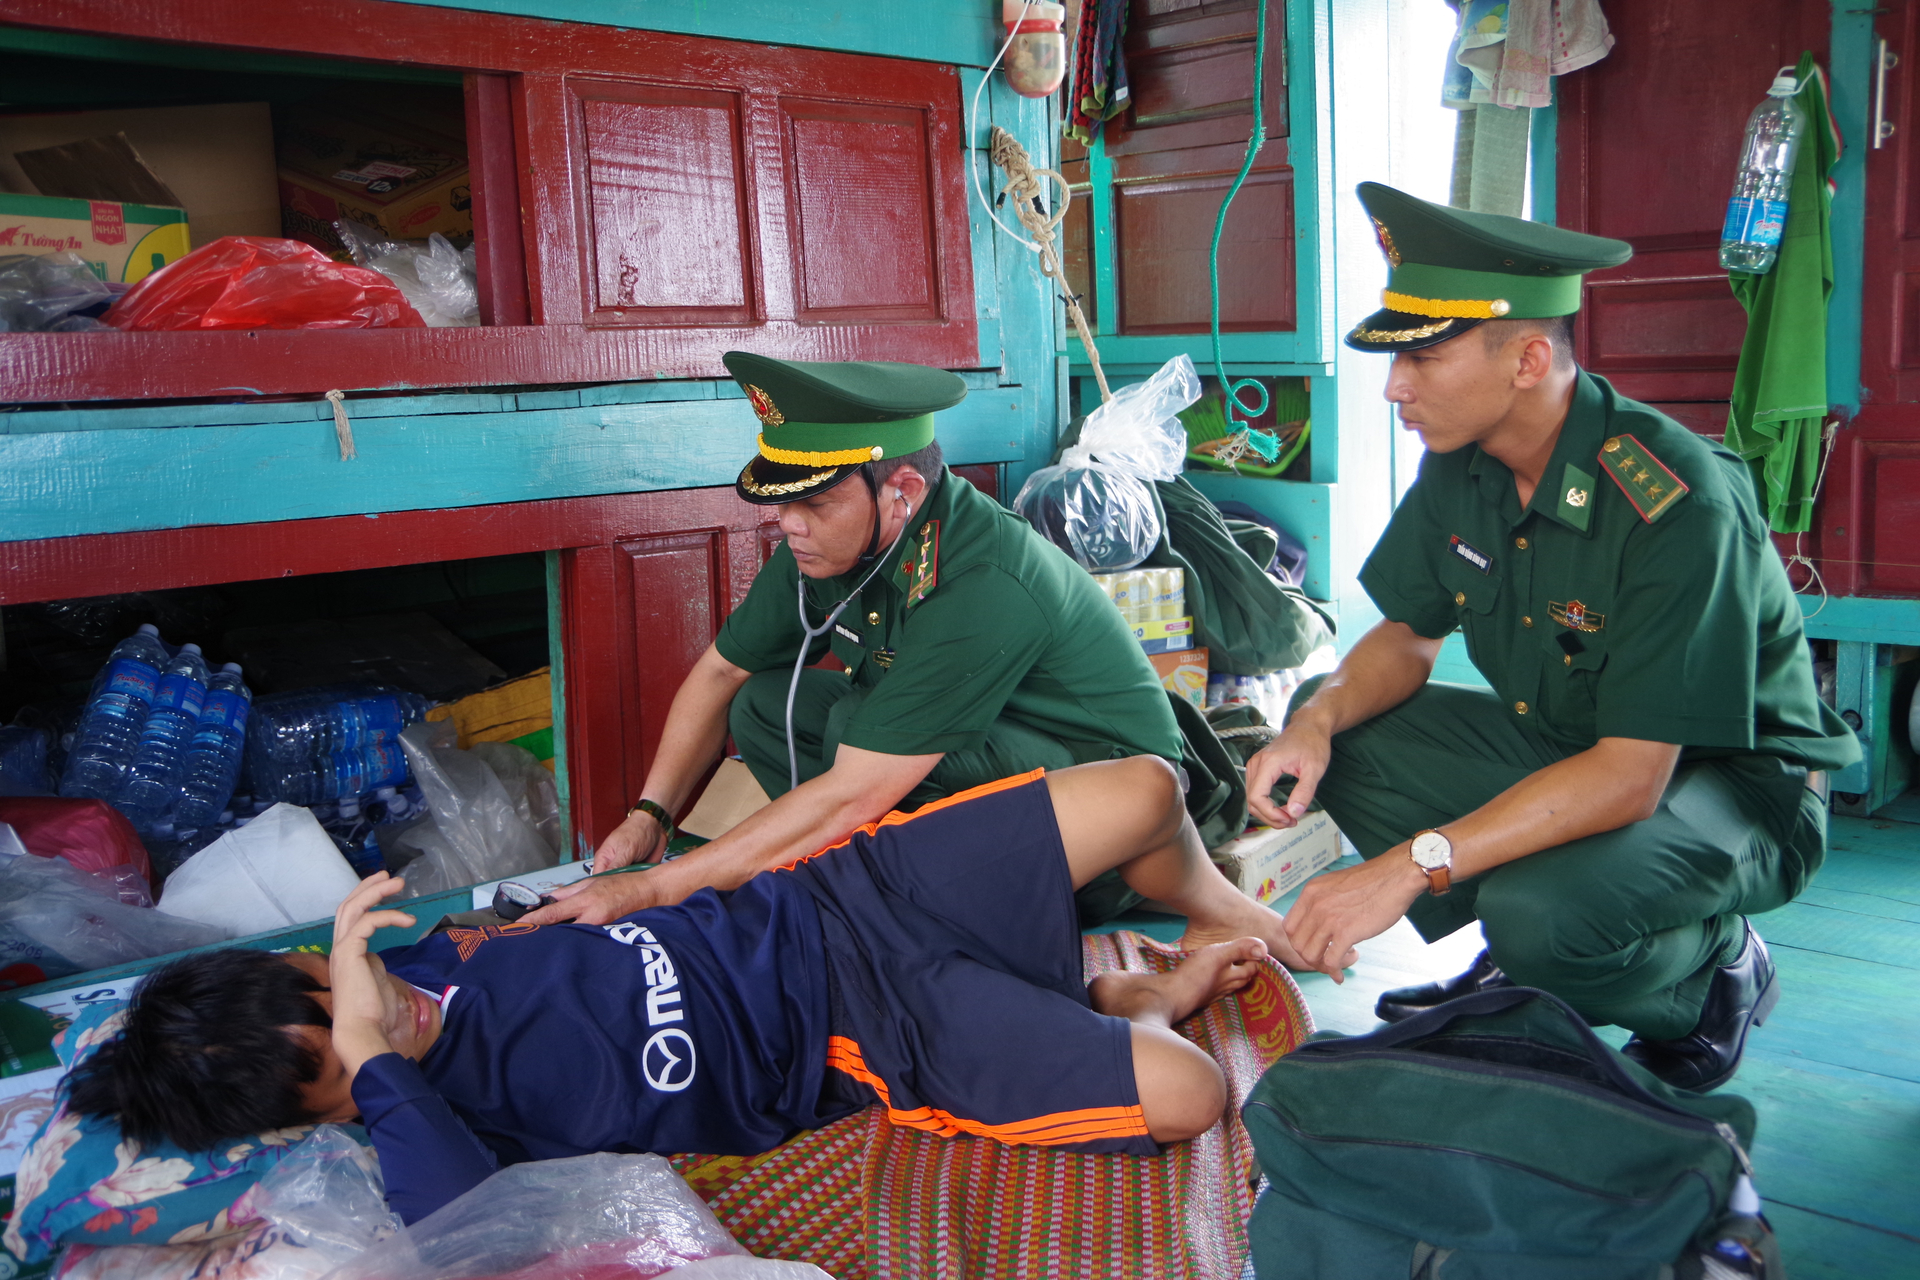 Quân y Bộ đội Biên phòng tỉnh Bình Định chăm sóc sức khỏe ban đầu cho thuyền viên gặp nạn. Ảnh: V.Đ.T.